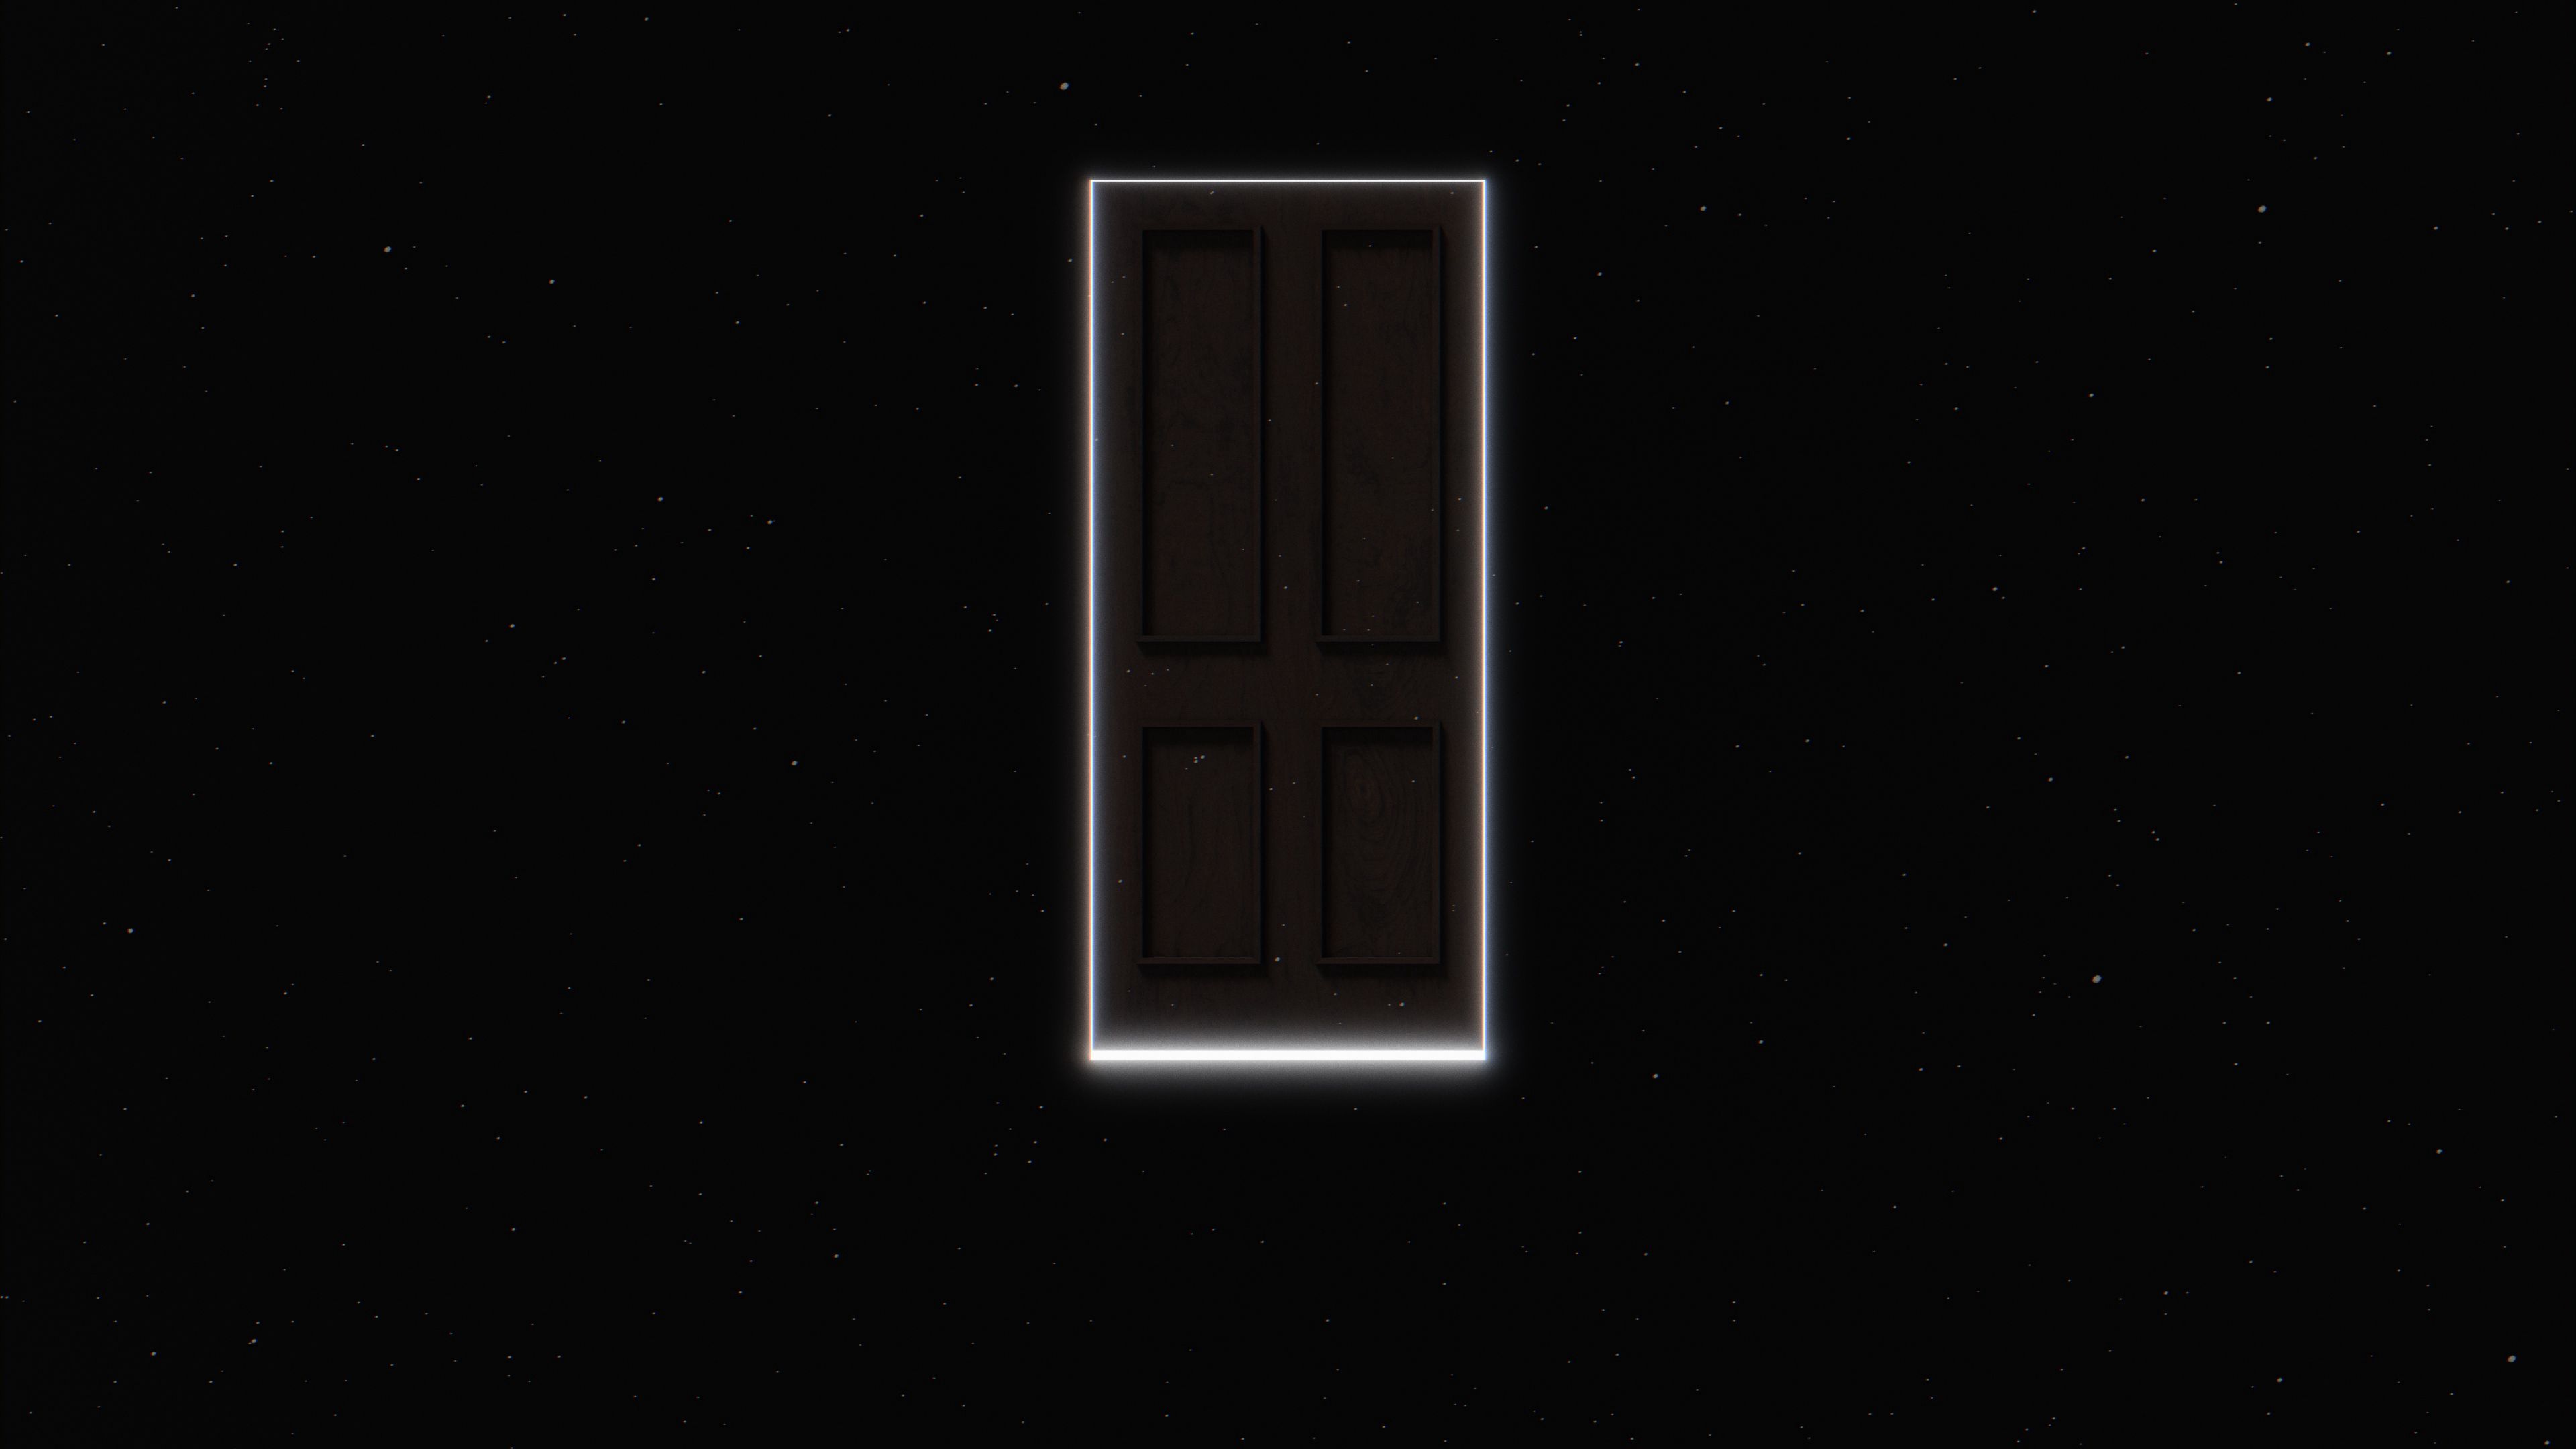 universe, portal, black, dark, glow, door